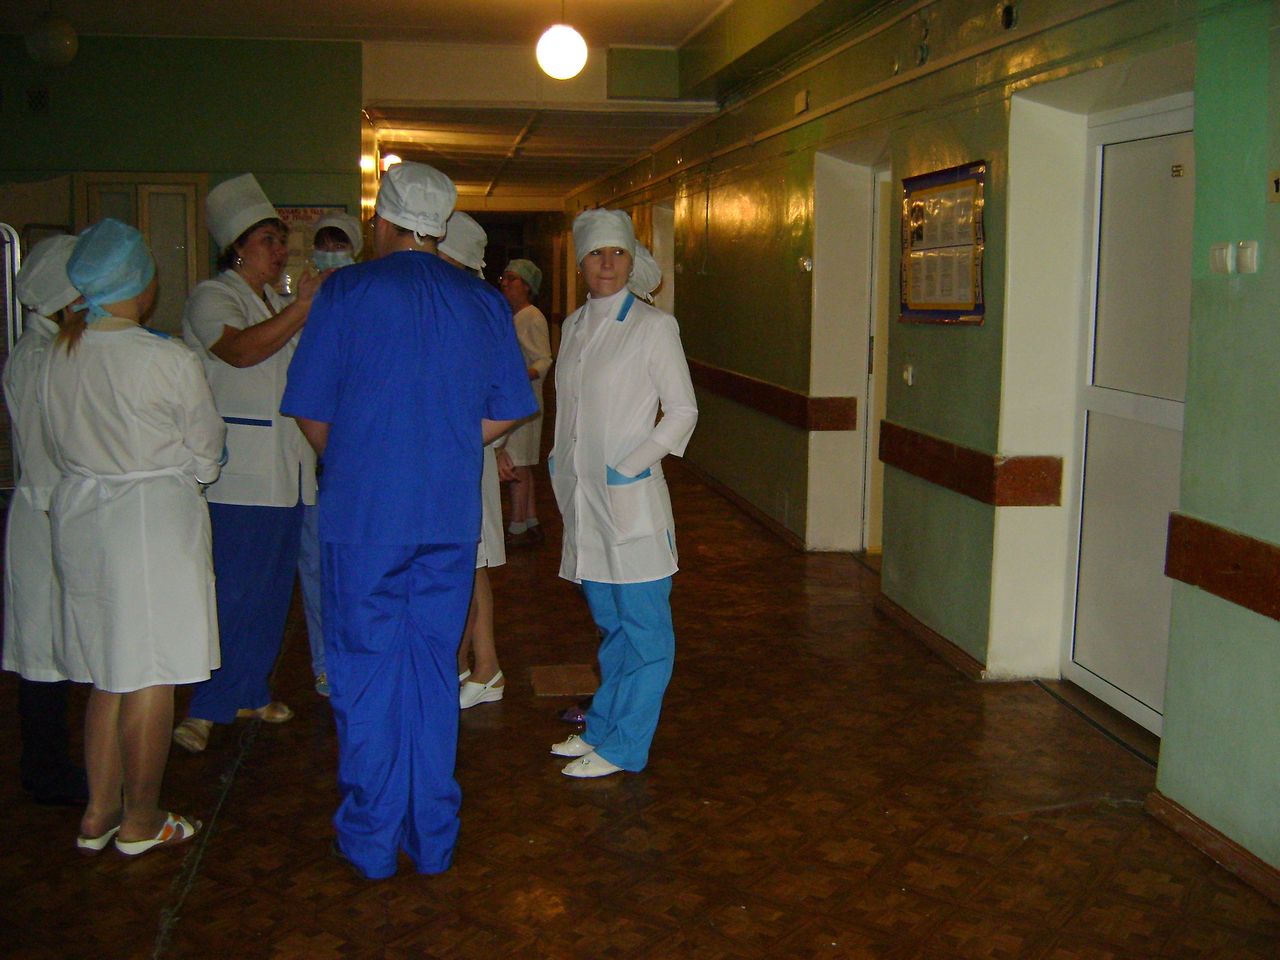 Медработники покупали халаты и сменную обувь за свой счет. Прокуроры выявили нарушения в Серовской городской больнице